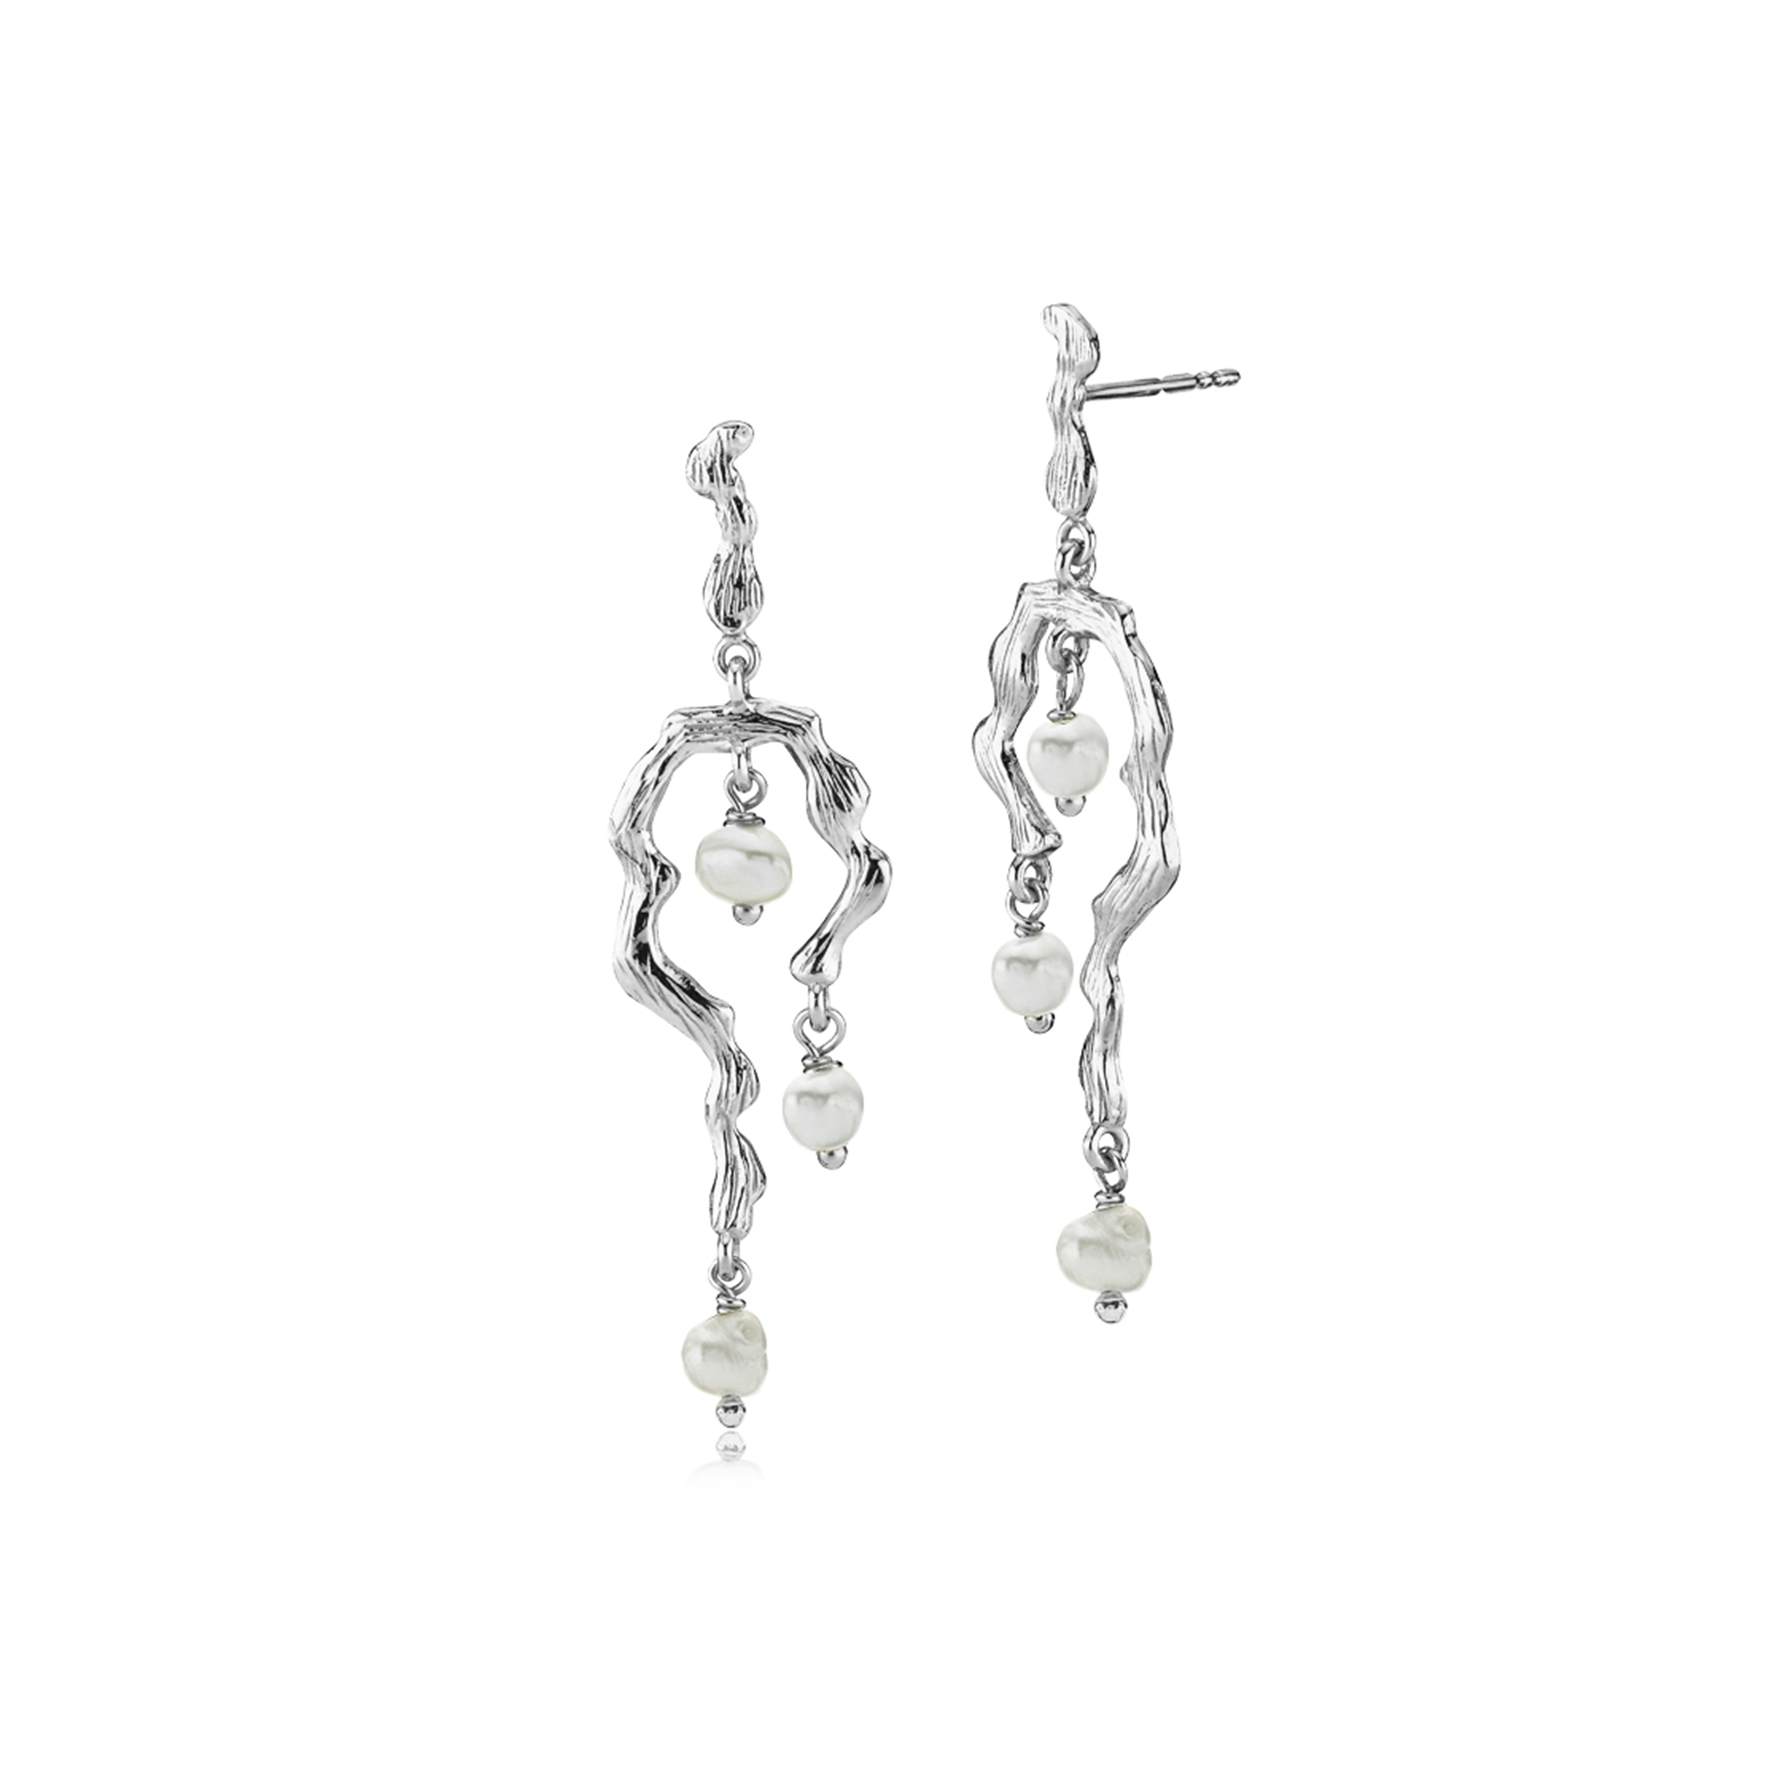 Lærke Bentsen By Sistie Long Earrings With Pearls fra Sistie i Sølv Sterling 925|Freshwater Pearl